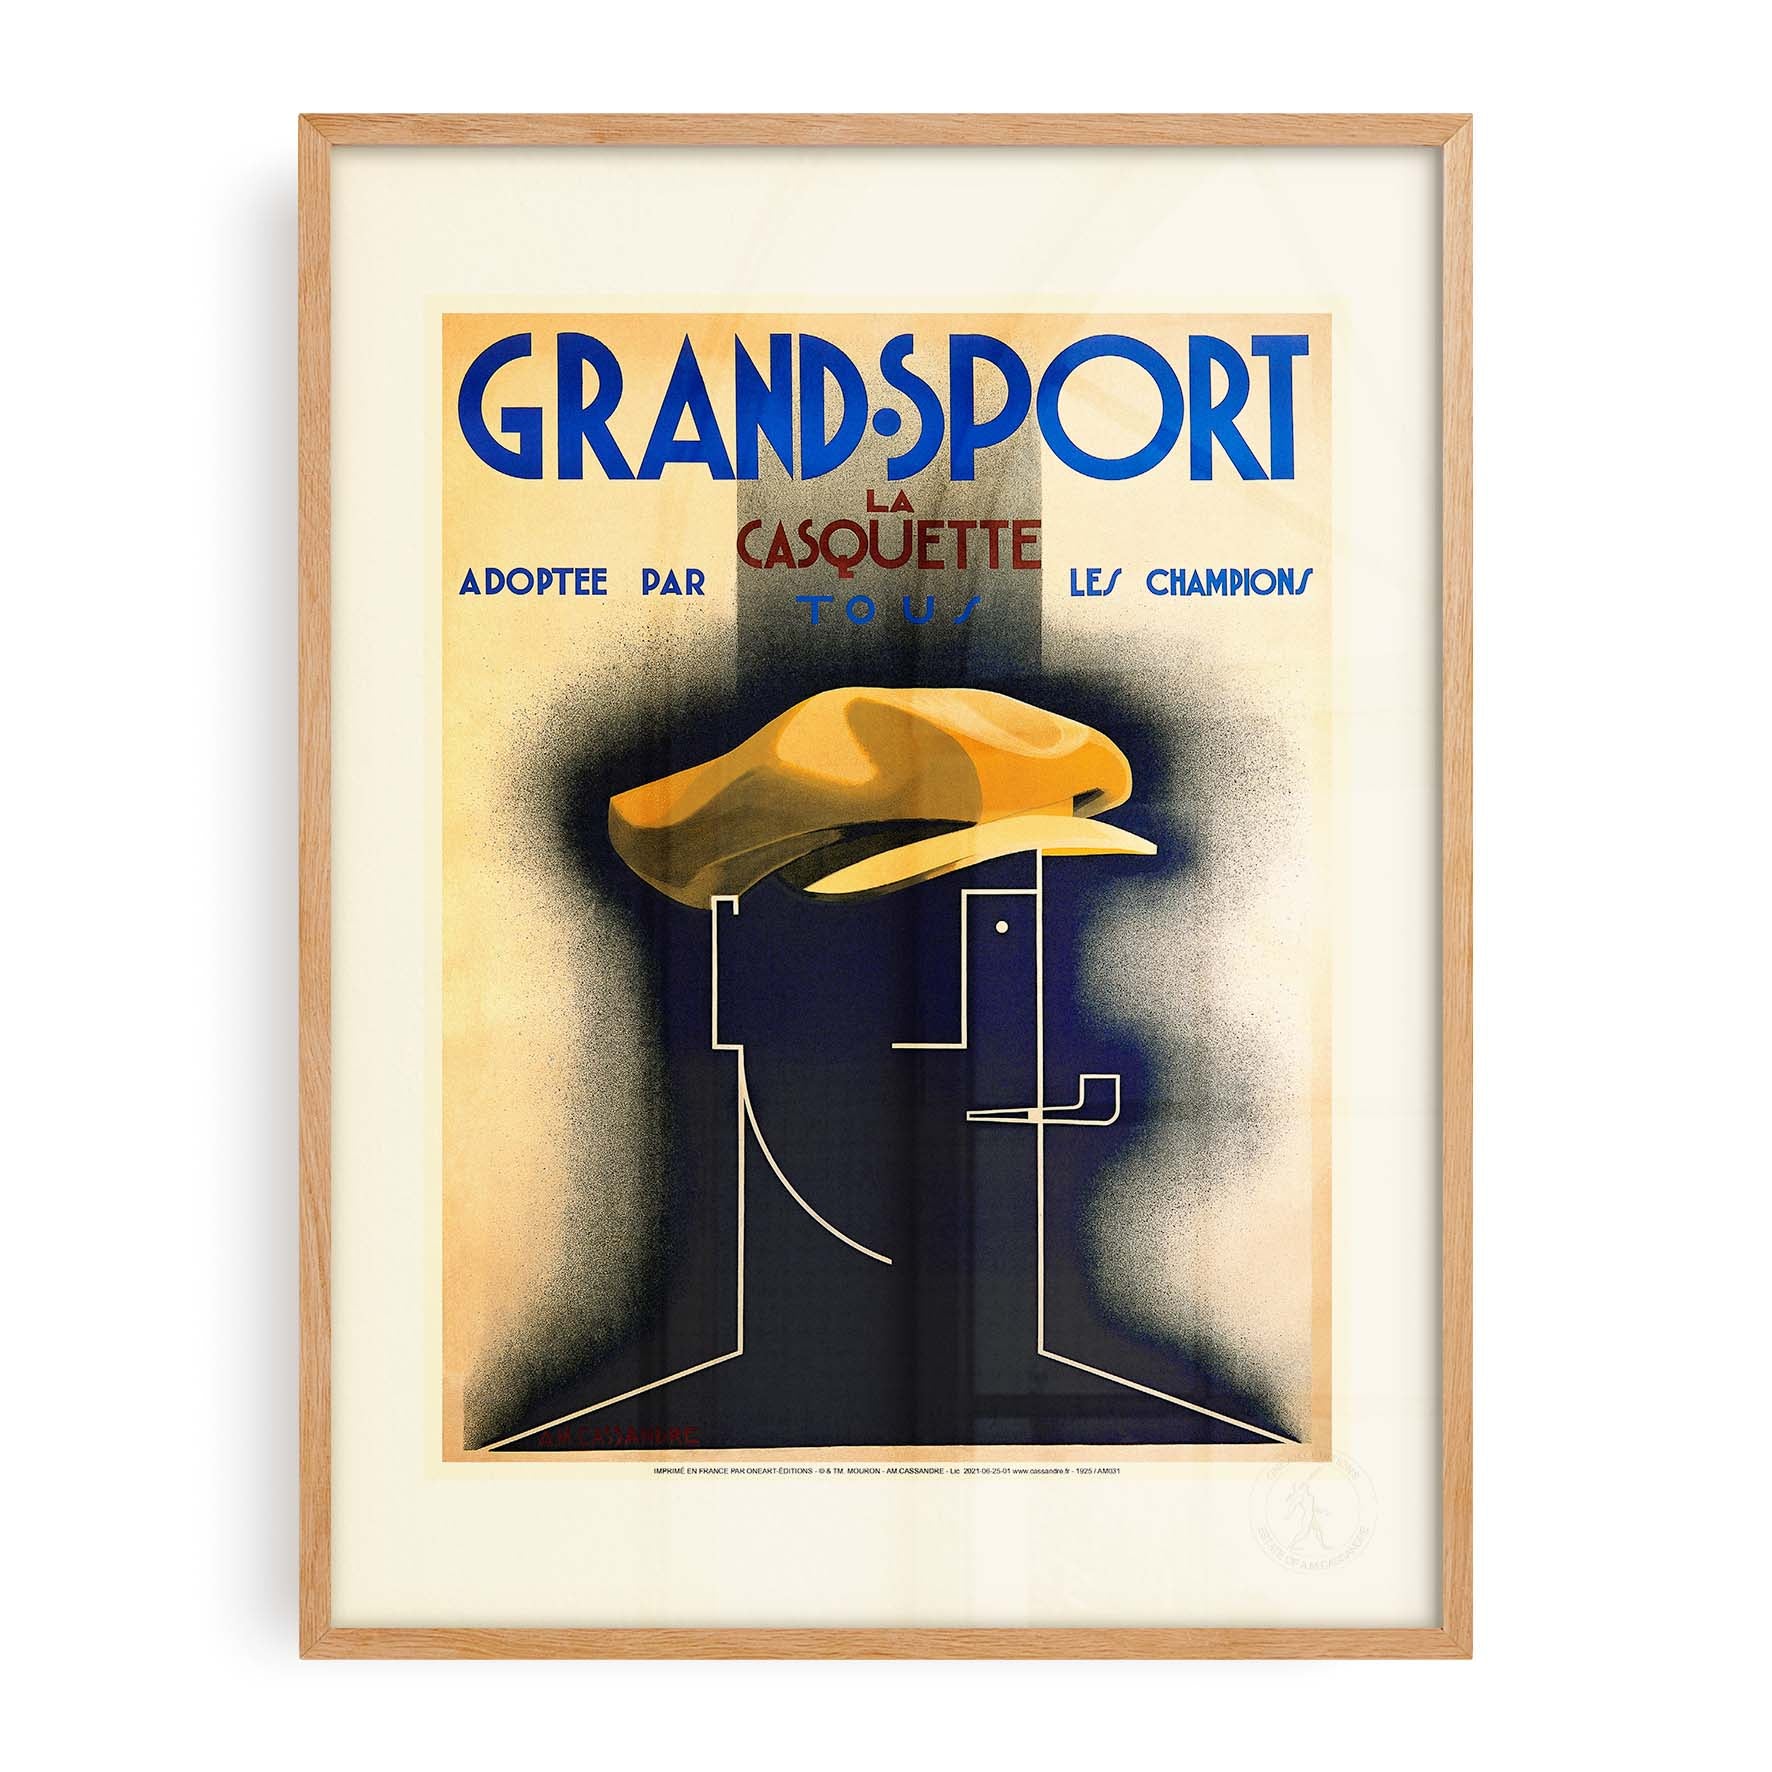 Affiche Cassandre - Grand Sport-oneart.fr